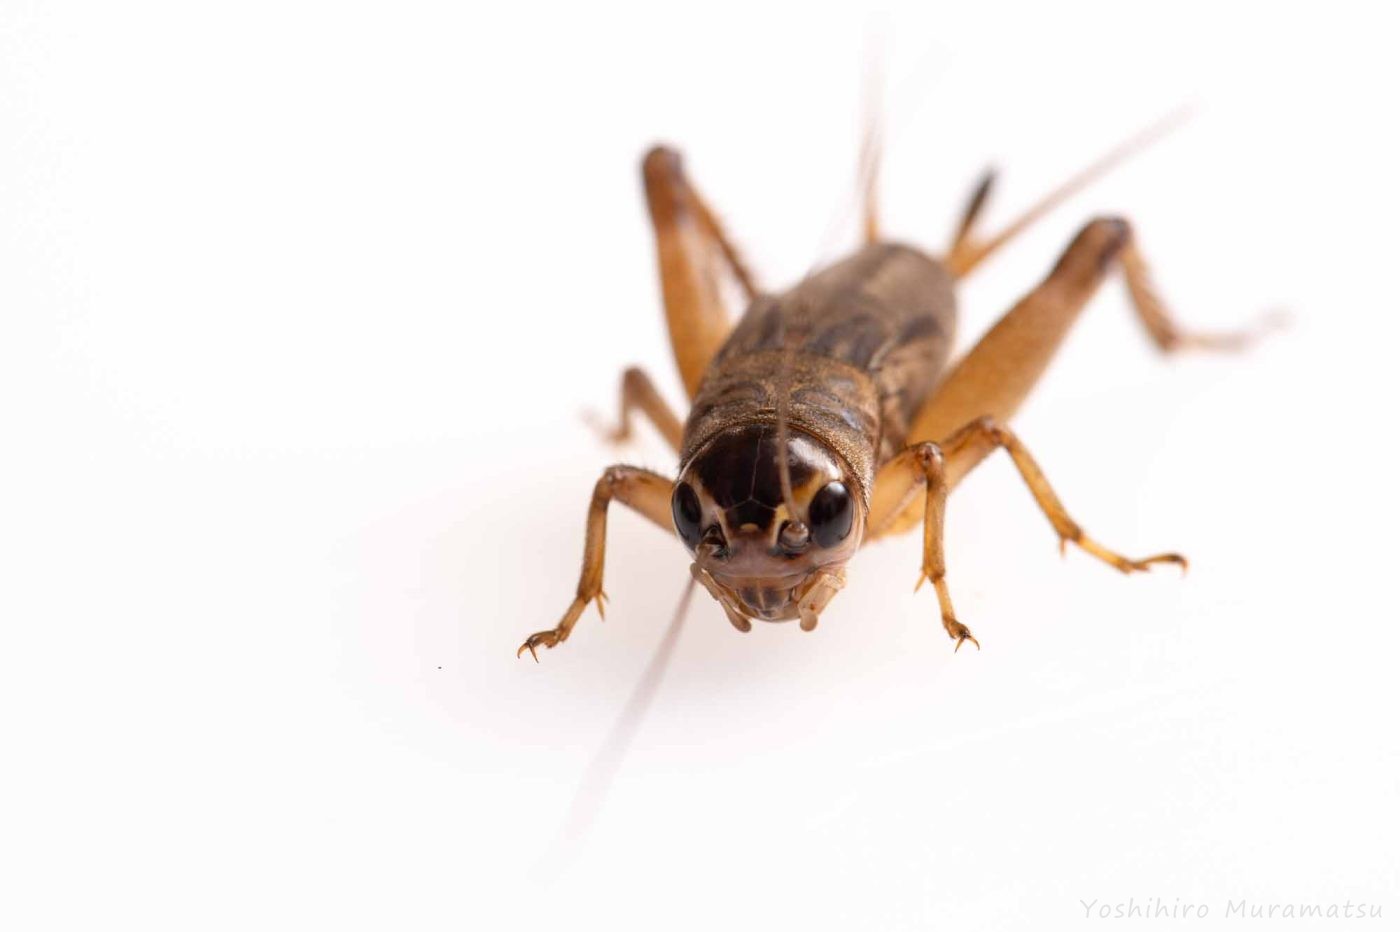 エンマコオロギの特徴や成長まで紹介 虫の写真と生態なら昆虫写真図鑑 ムシミル